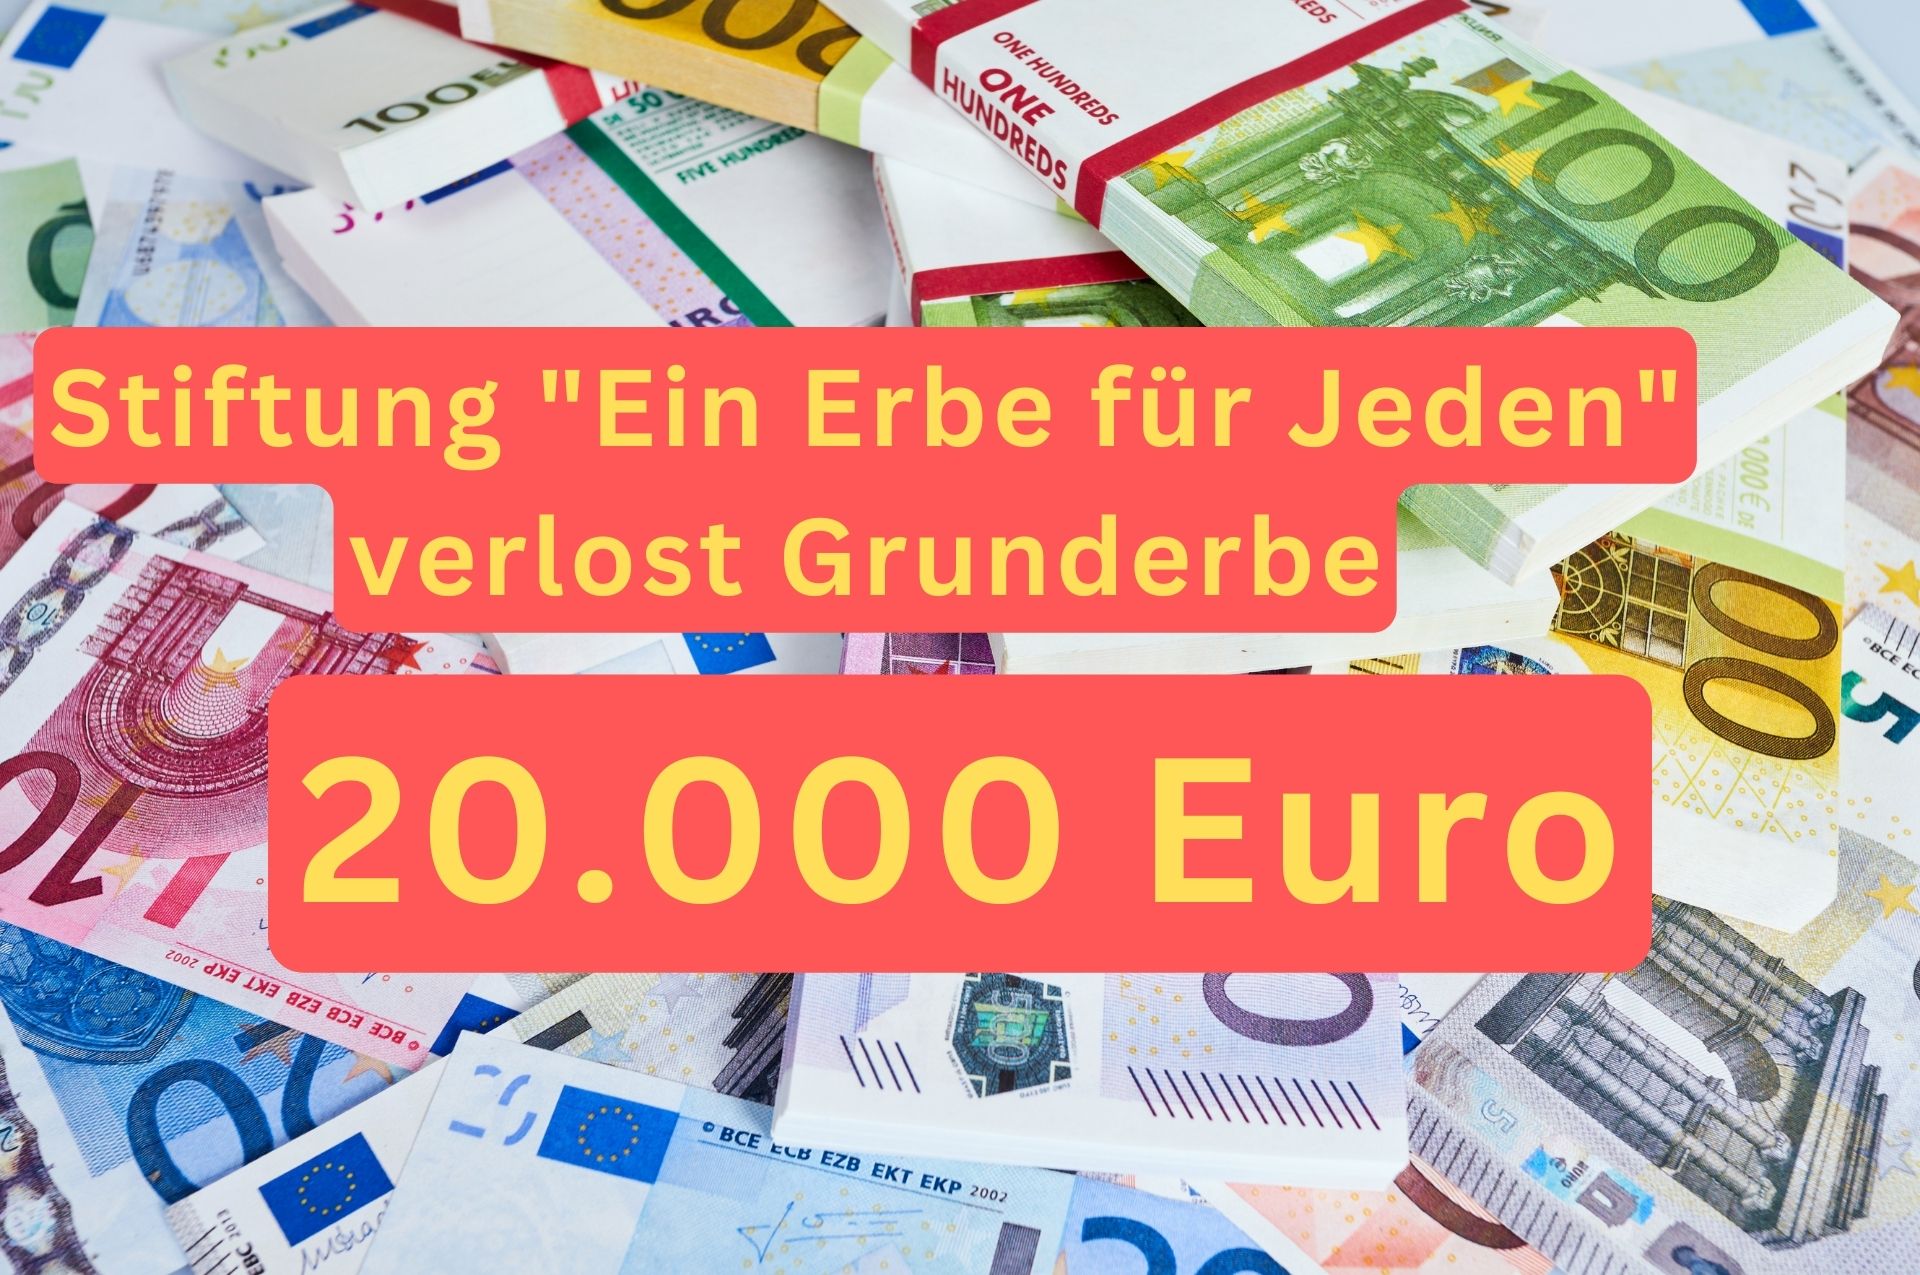 Ein Erbe für Jeden – Stiftung verlost 20.000 Euro